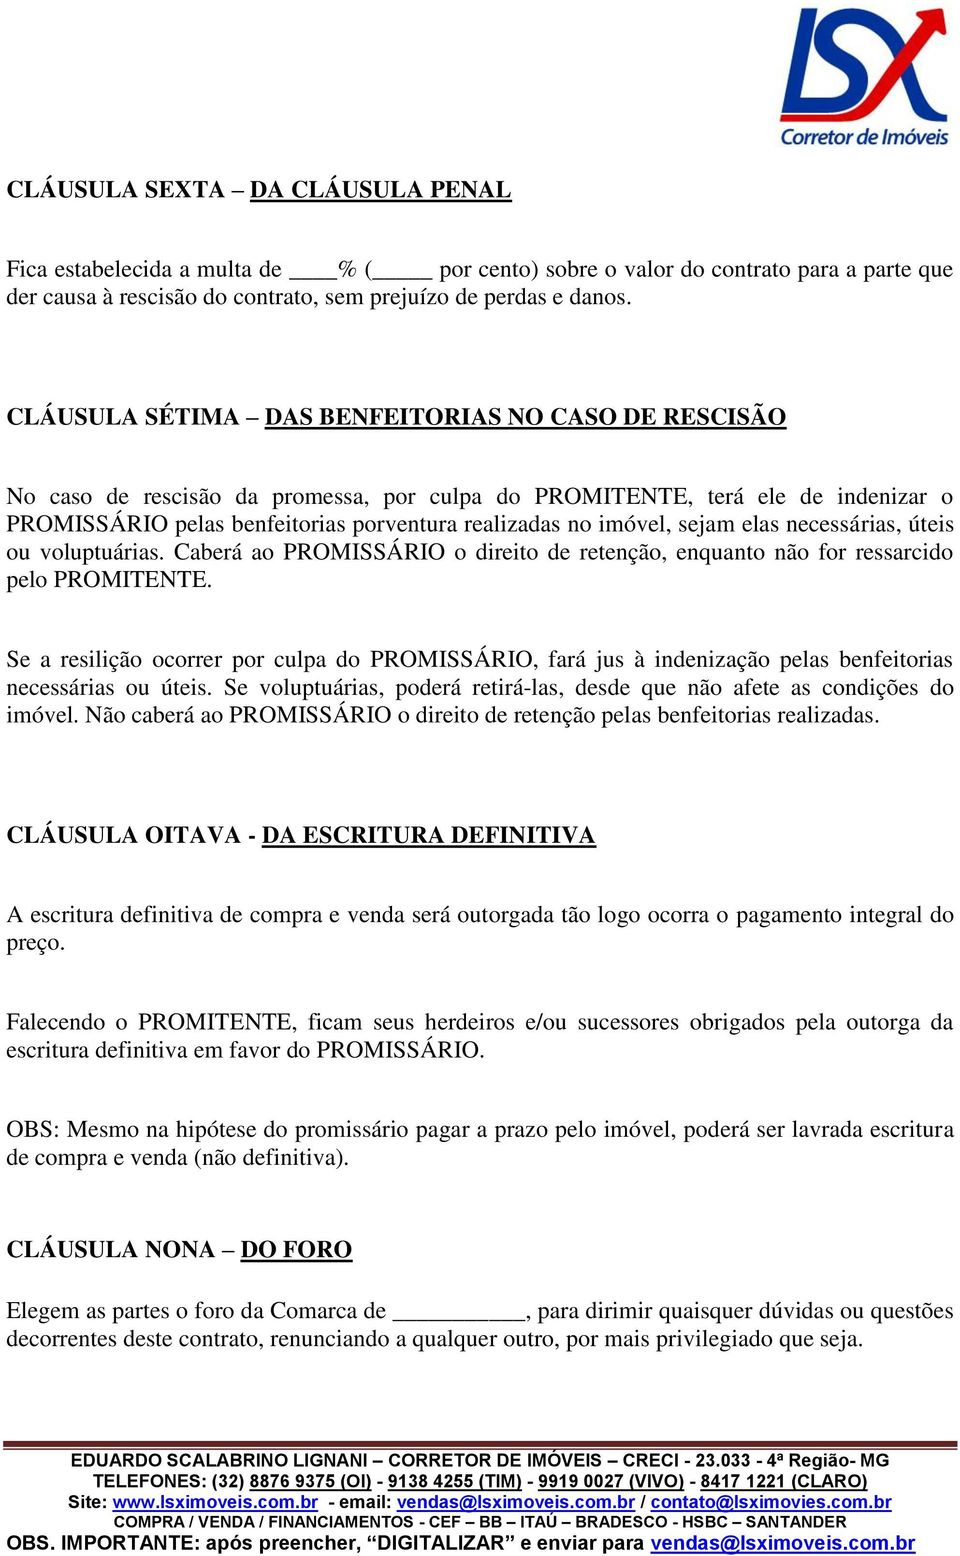 MODELO DE CONTRATO DE PROMESSA DE COMPRA E VENDA DE IMÓVEL - PDF Free  Download